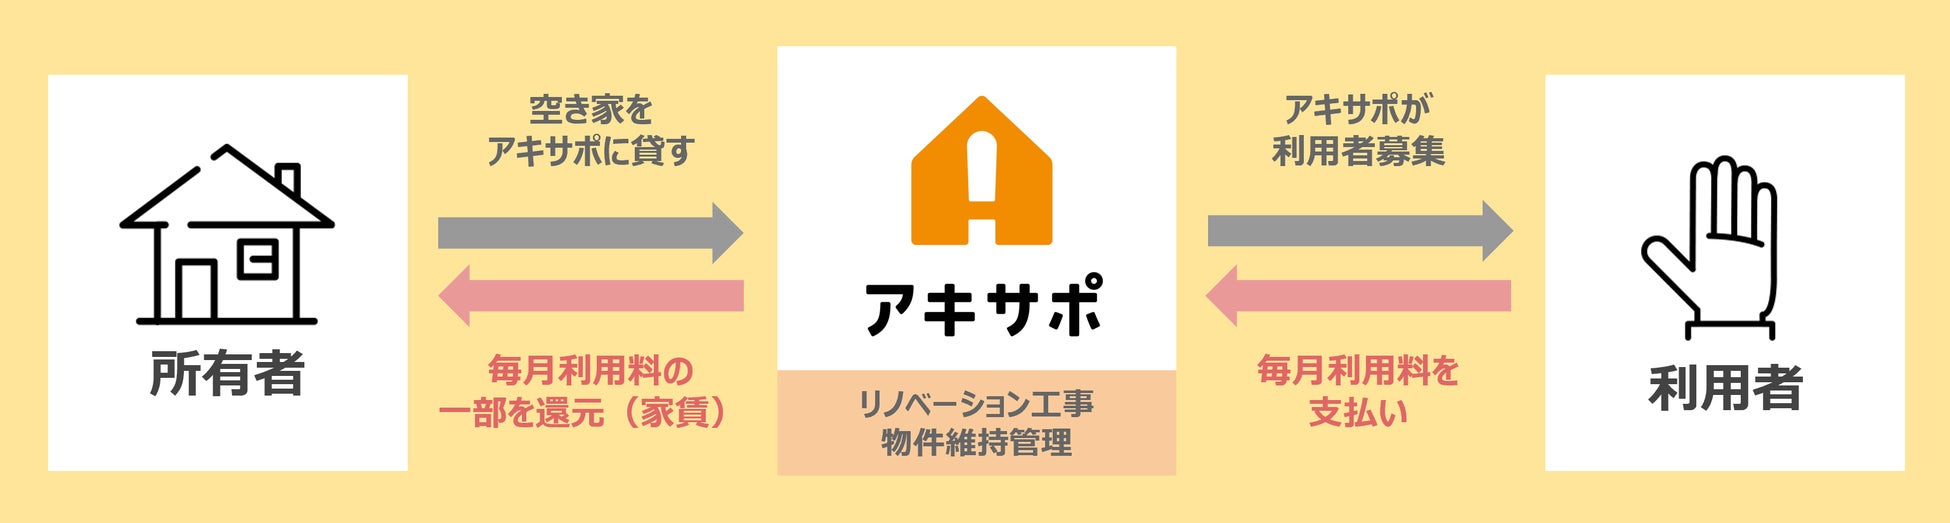 横須賀市初空き家を再生したシェアキッチン「アキサポキッチン」営業開始のサブ画像3